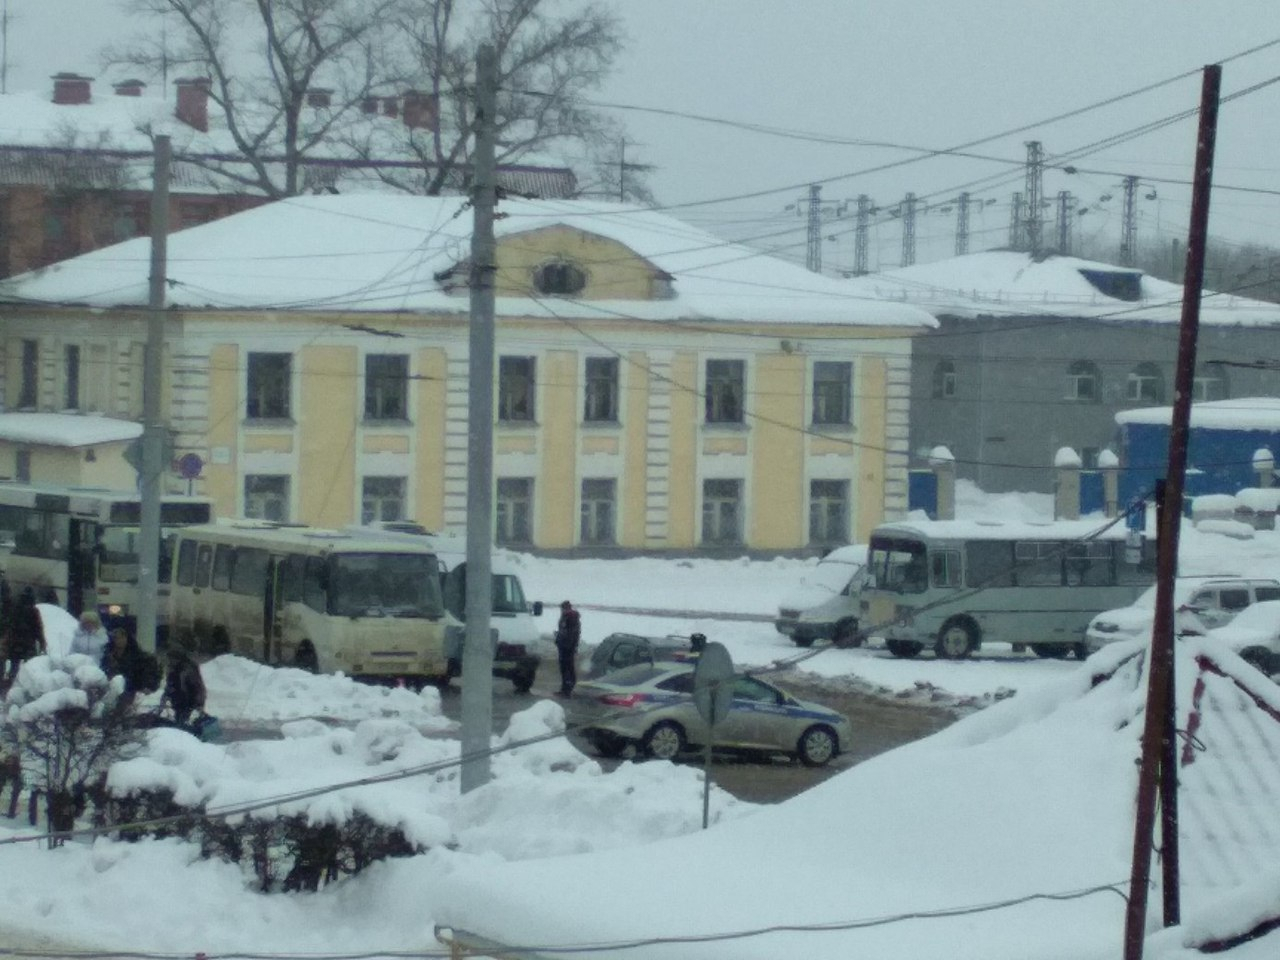 Владимирский вокзал перевернули вверх дном в поисках бомбы